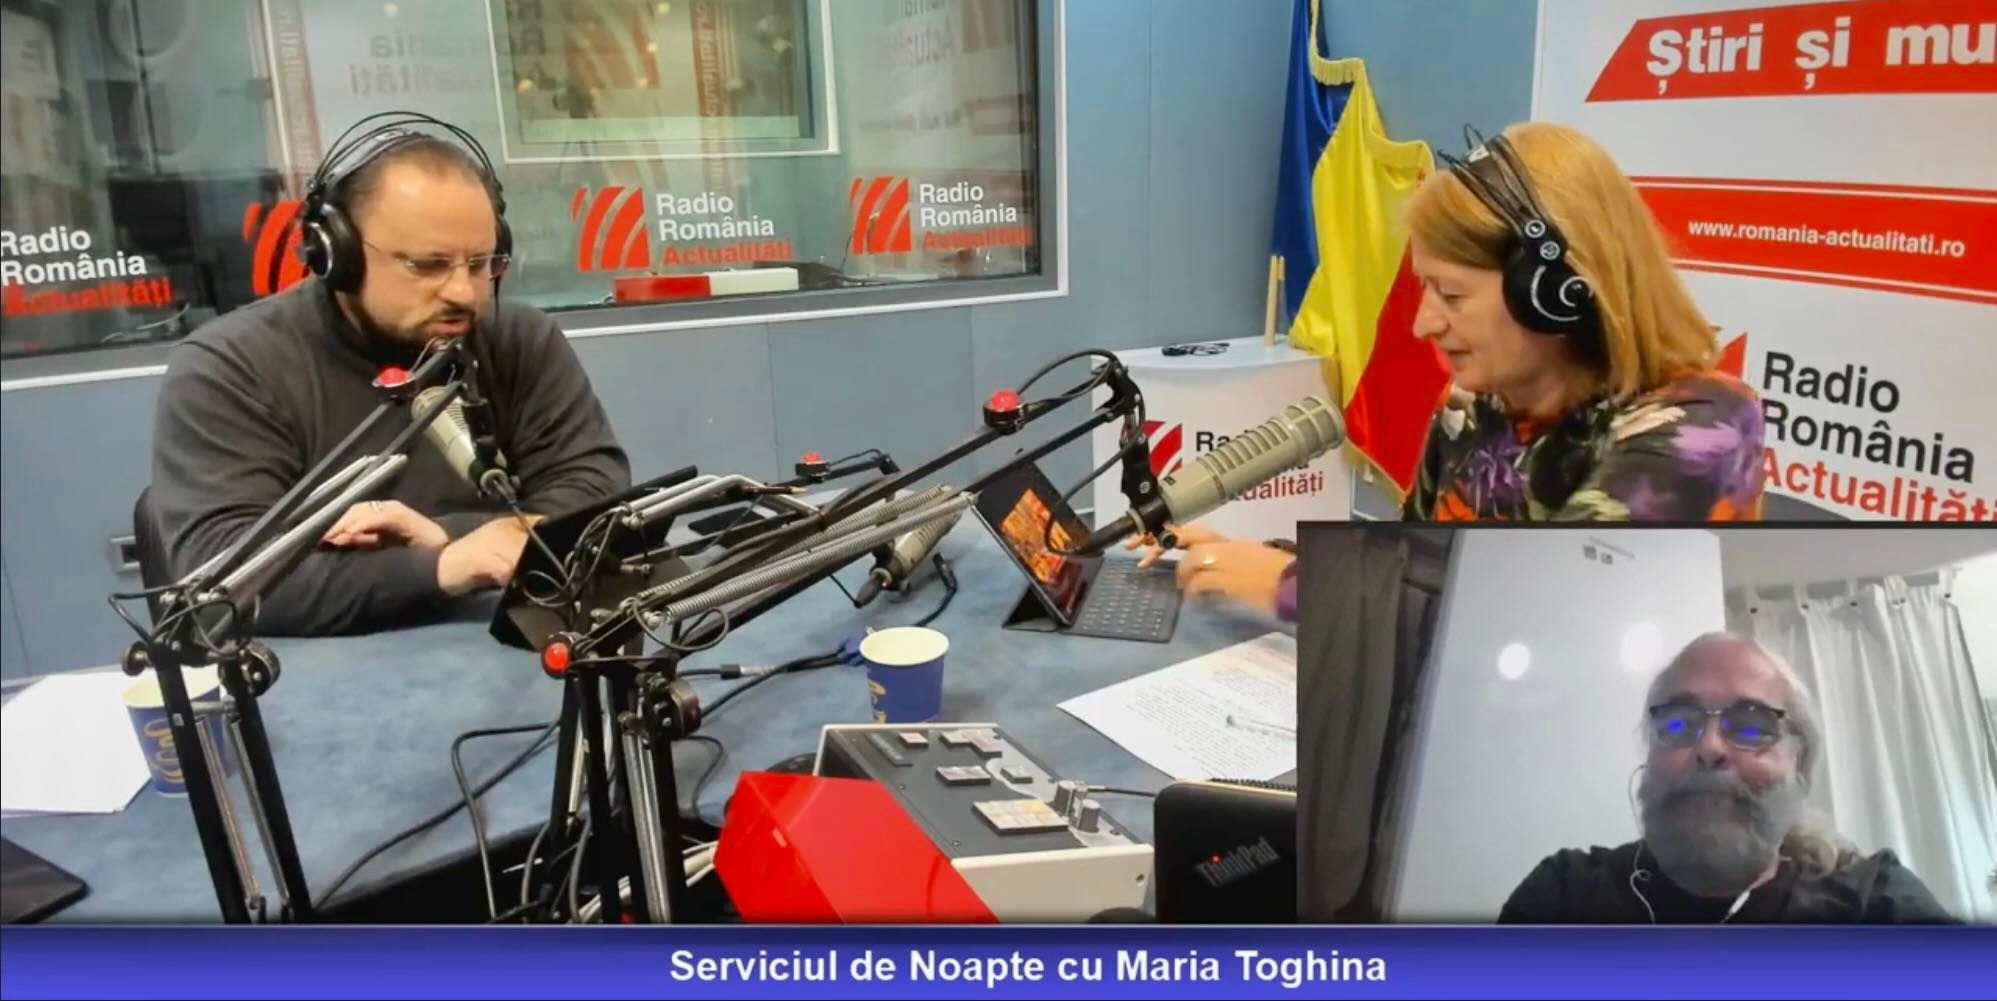 Jurnalistul Ion Vaciu, președinte Digital Transformation Council și Alexandru Rotaru, unul dintre primii inițiatori ai internetului în România, alături de realizatoarea emisiunii Serviciul de noapte, Maria Țoghină.